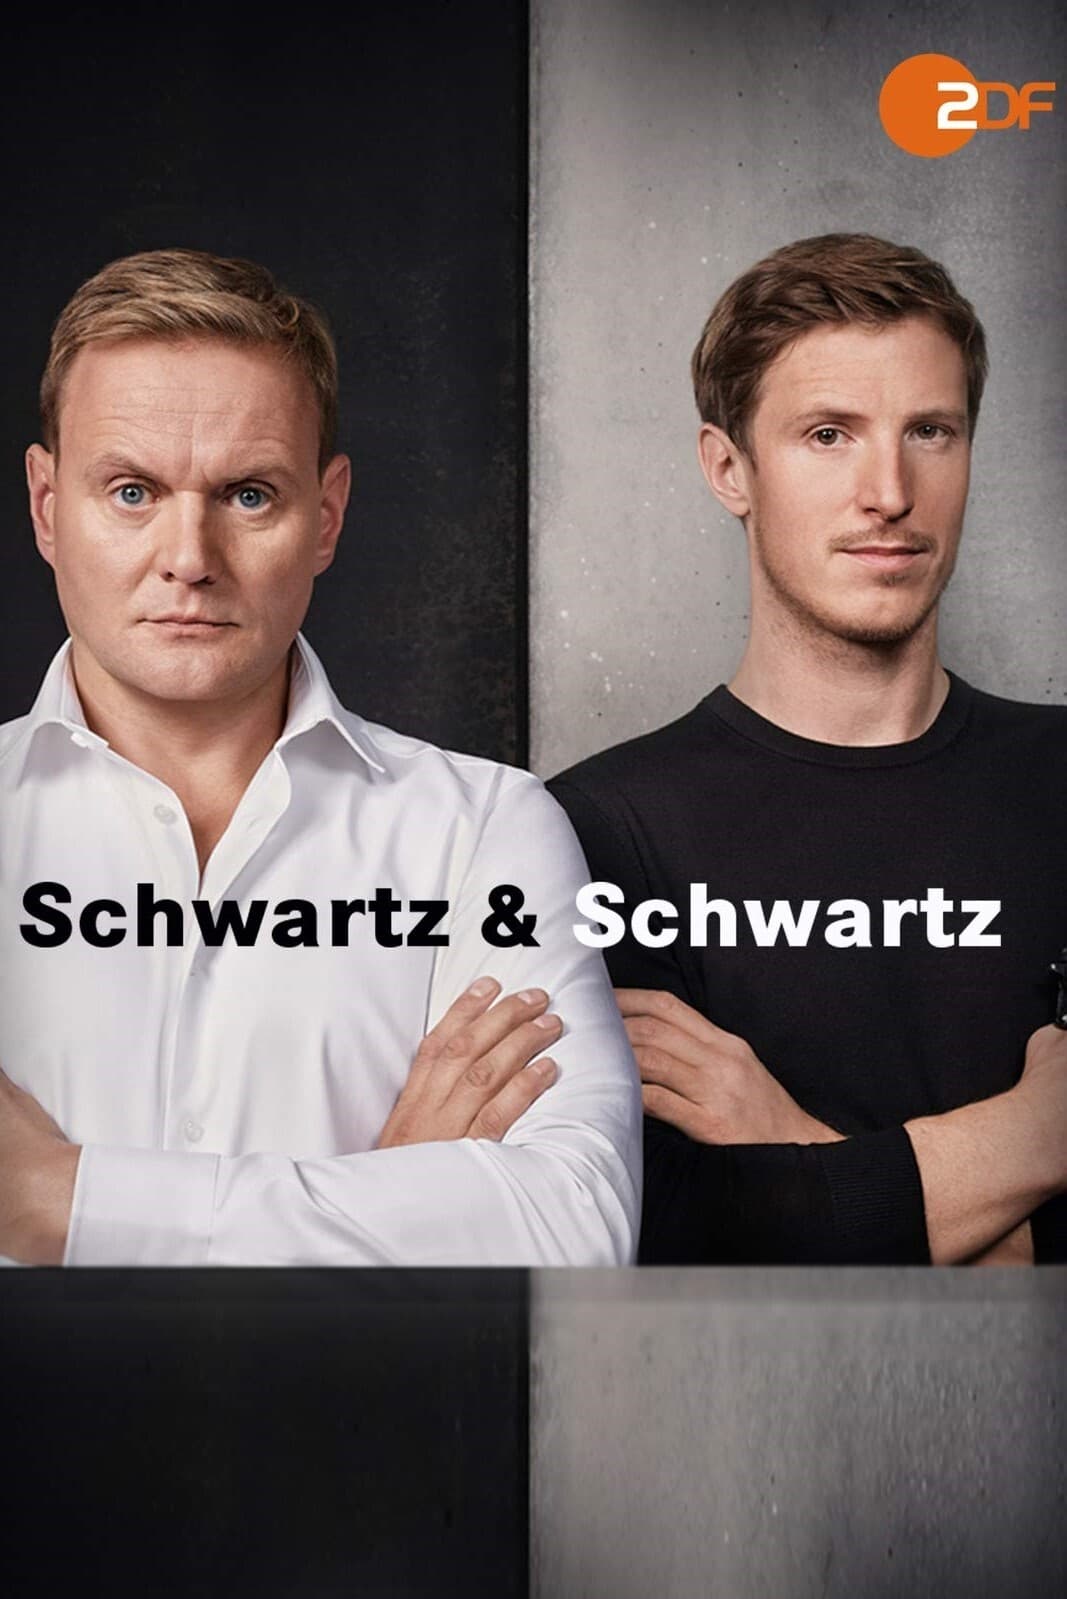 Schwartz & Schwartz (2018)